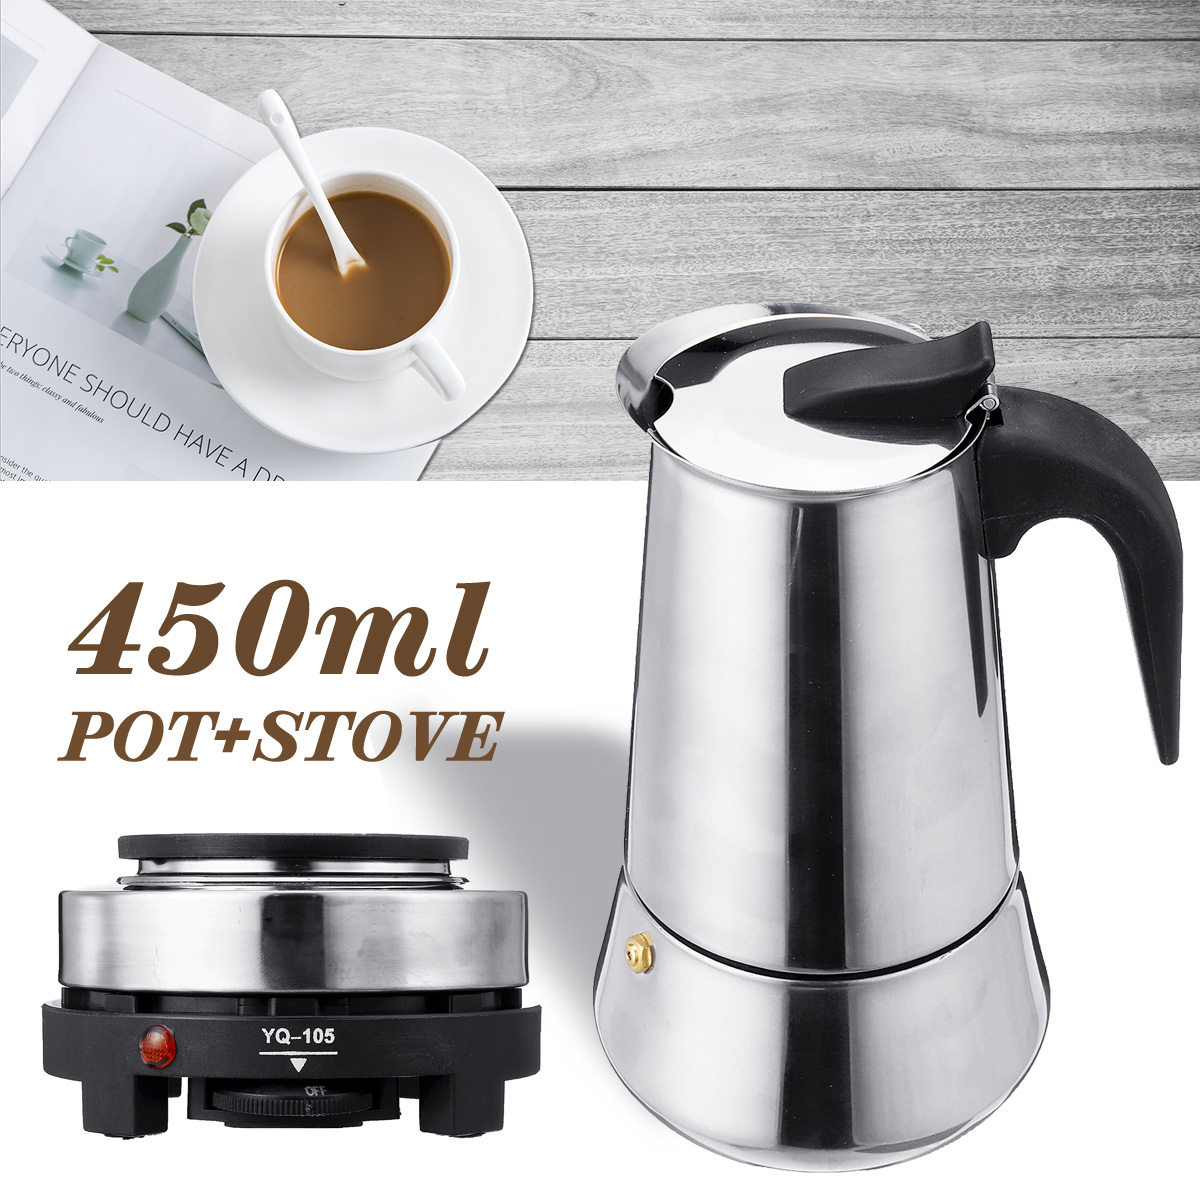 220V 500W 450ml Portable Coffee Espresso Pot Maker & Electric Stove Home Kitchen Tools 107